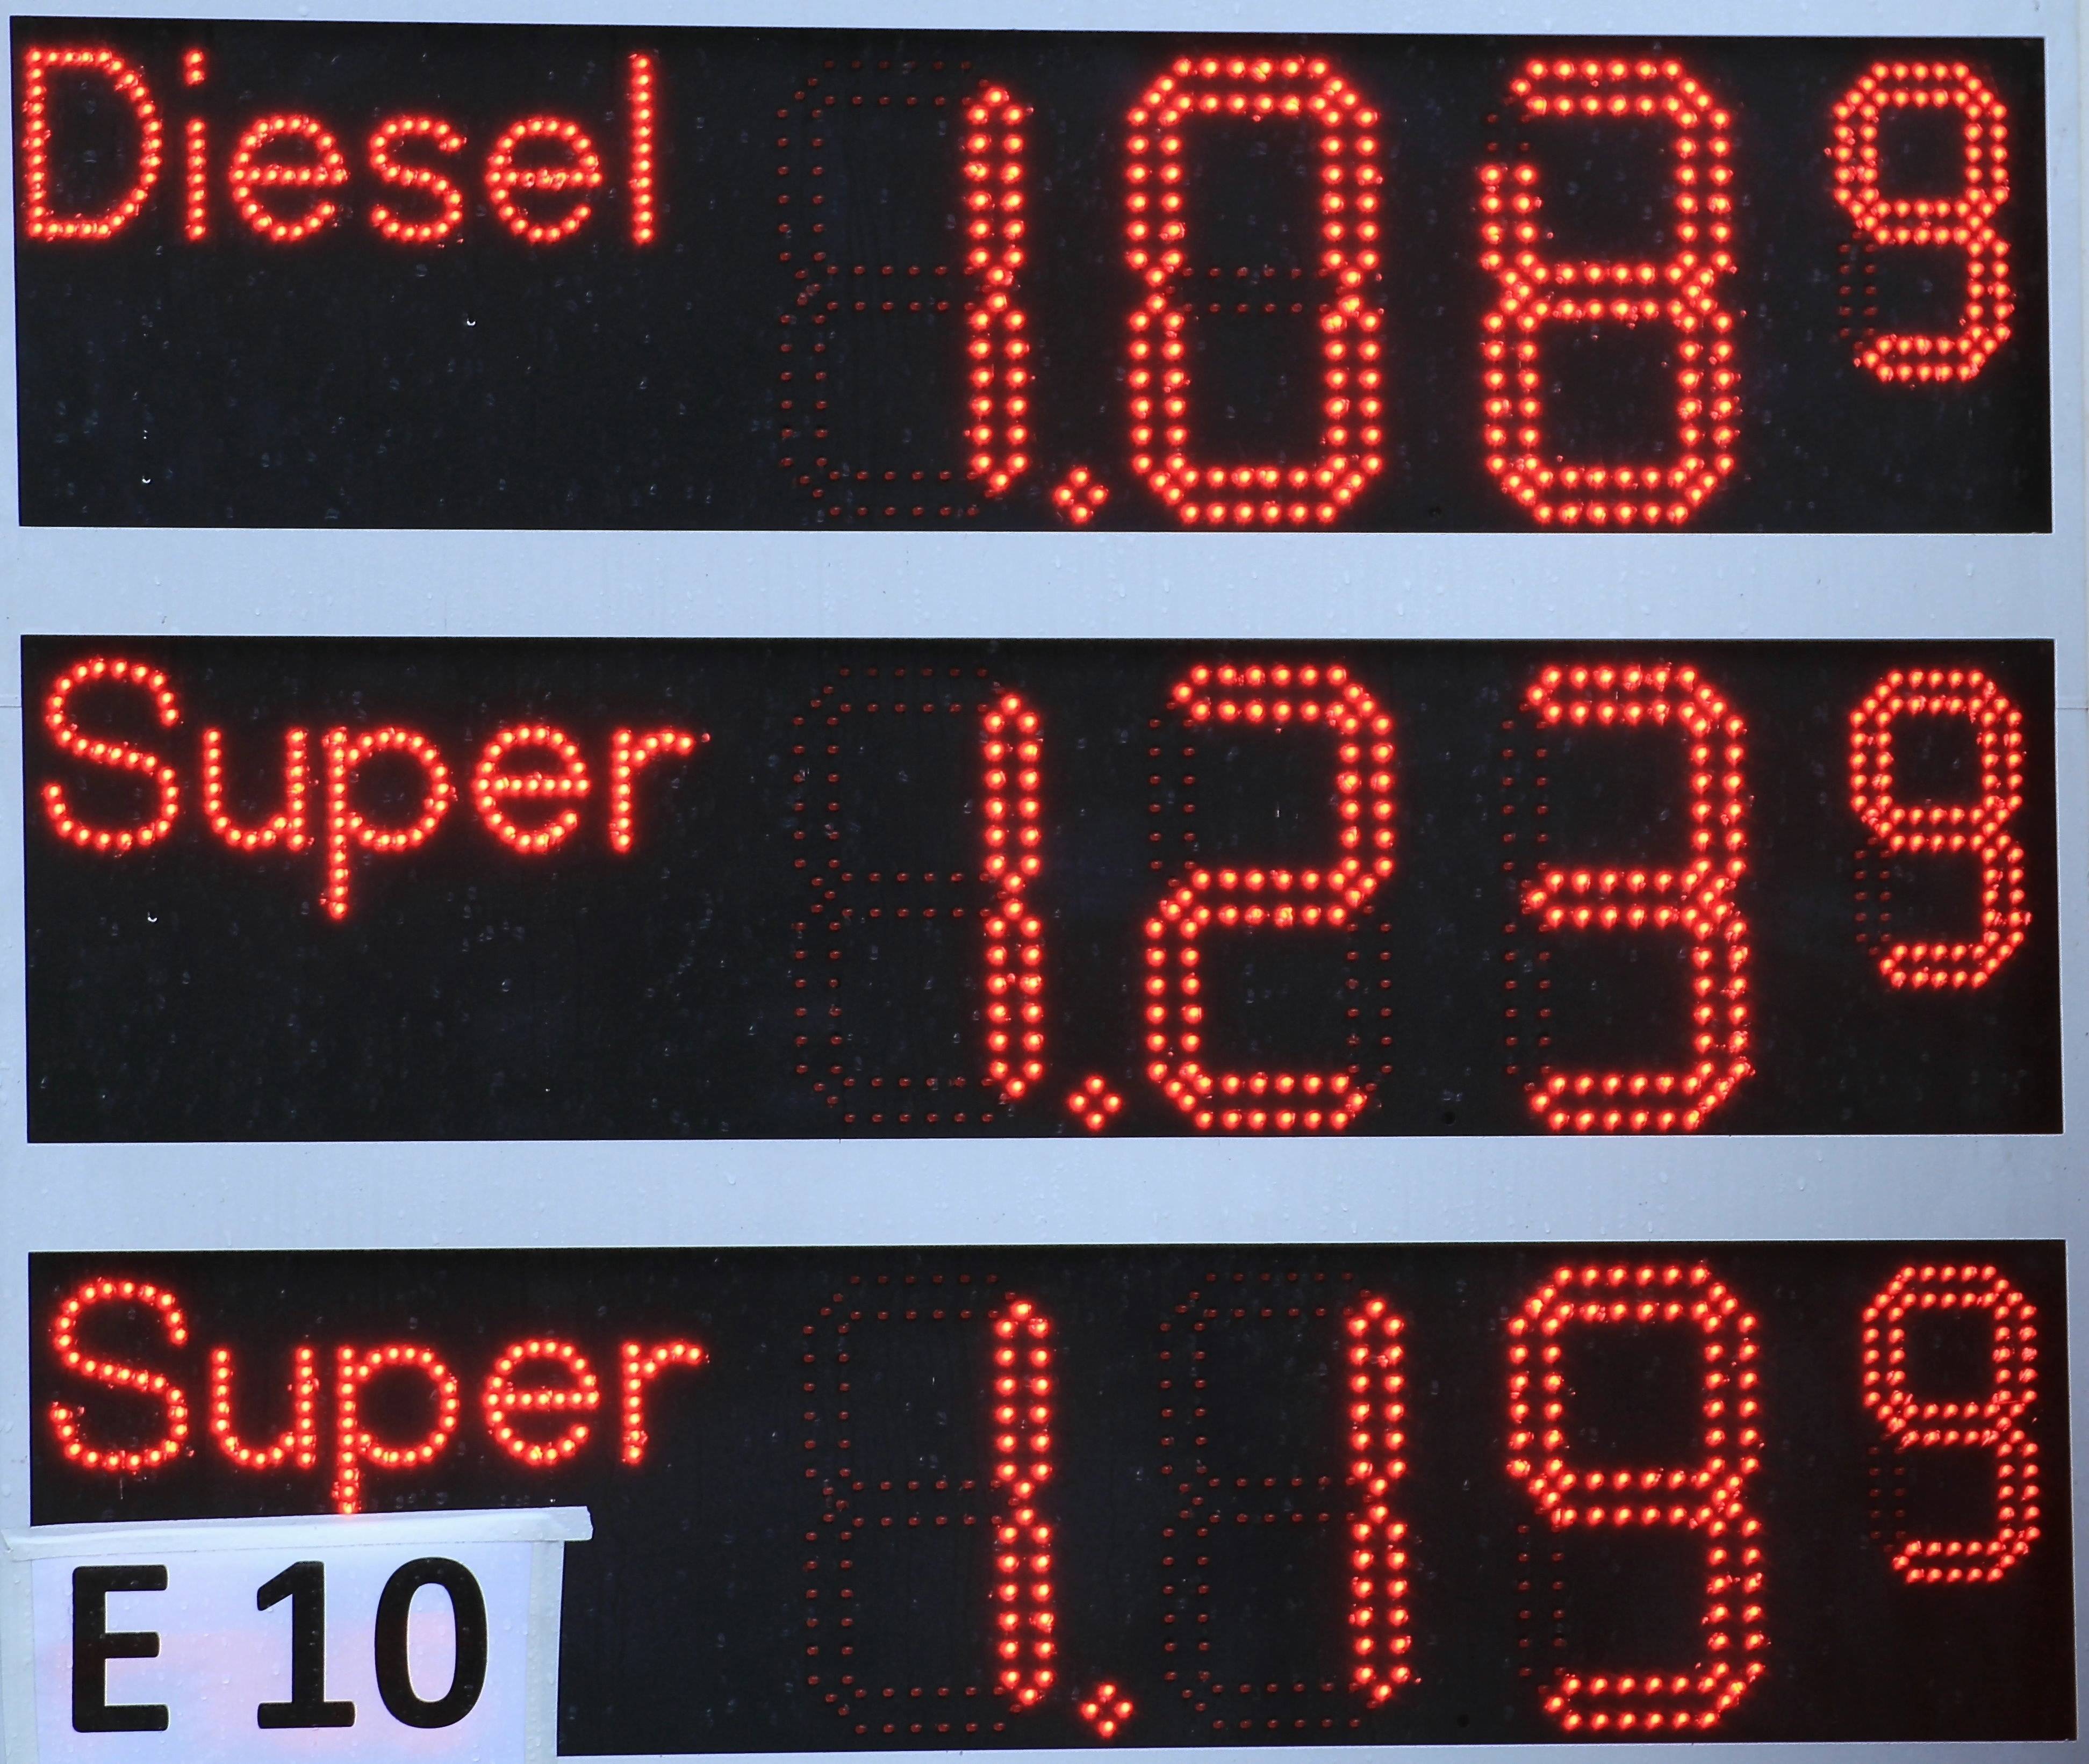 觀察並歸納油價重點現象，可訂出短期預測準則